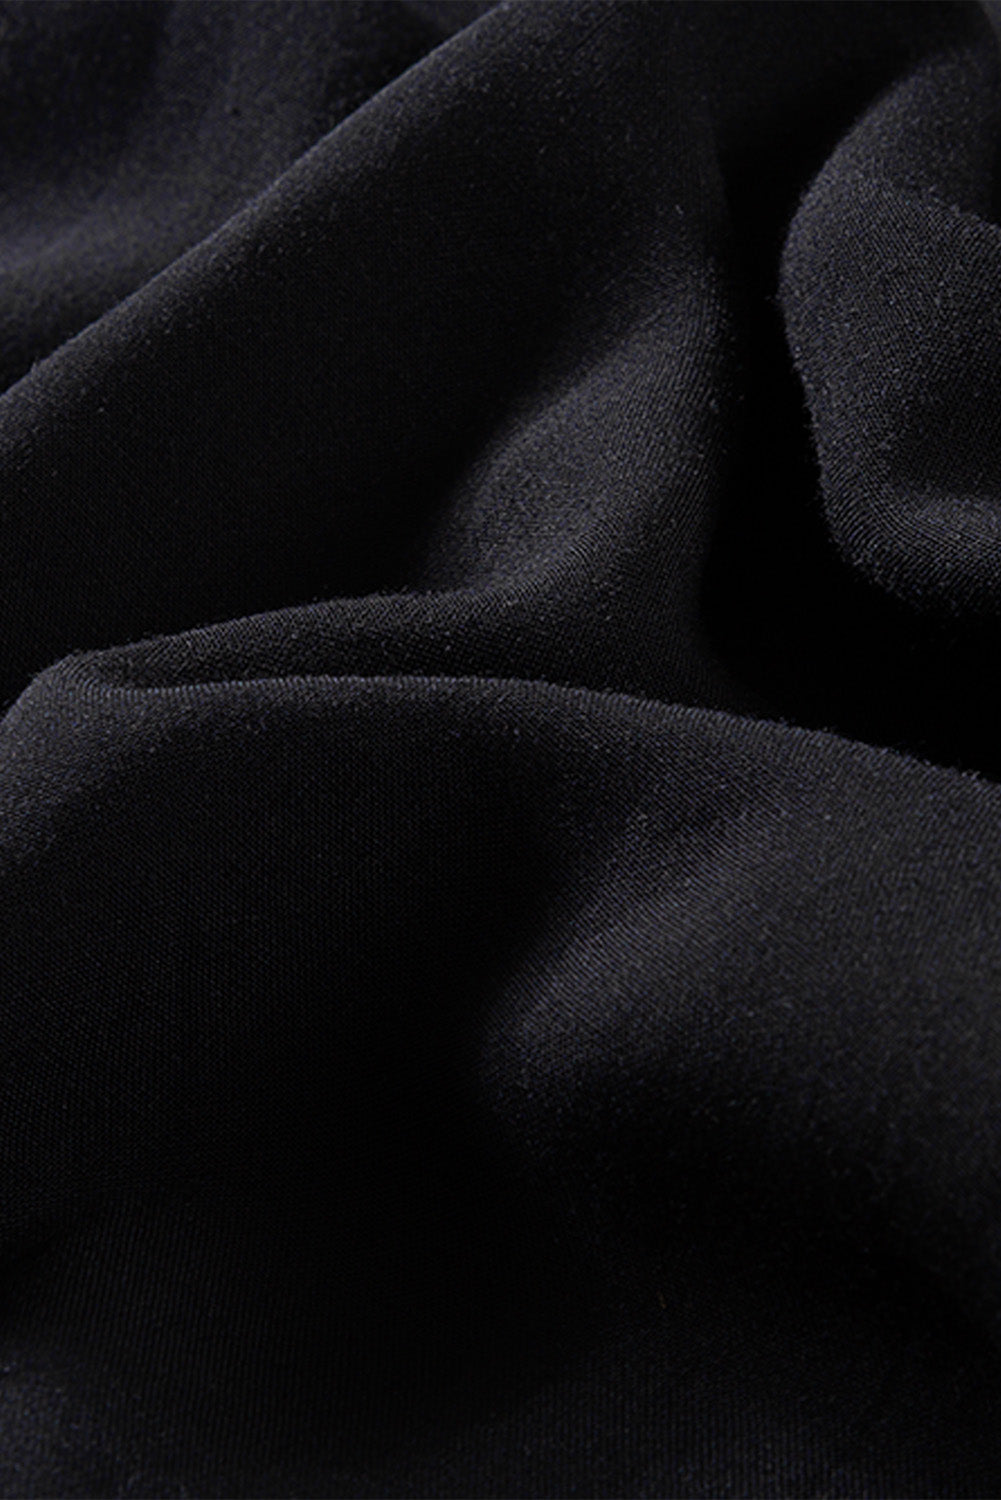 Črna obleka velike velikosti s čipkastimi rokavi in ​​odprtimi rameni